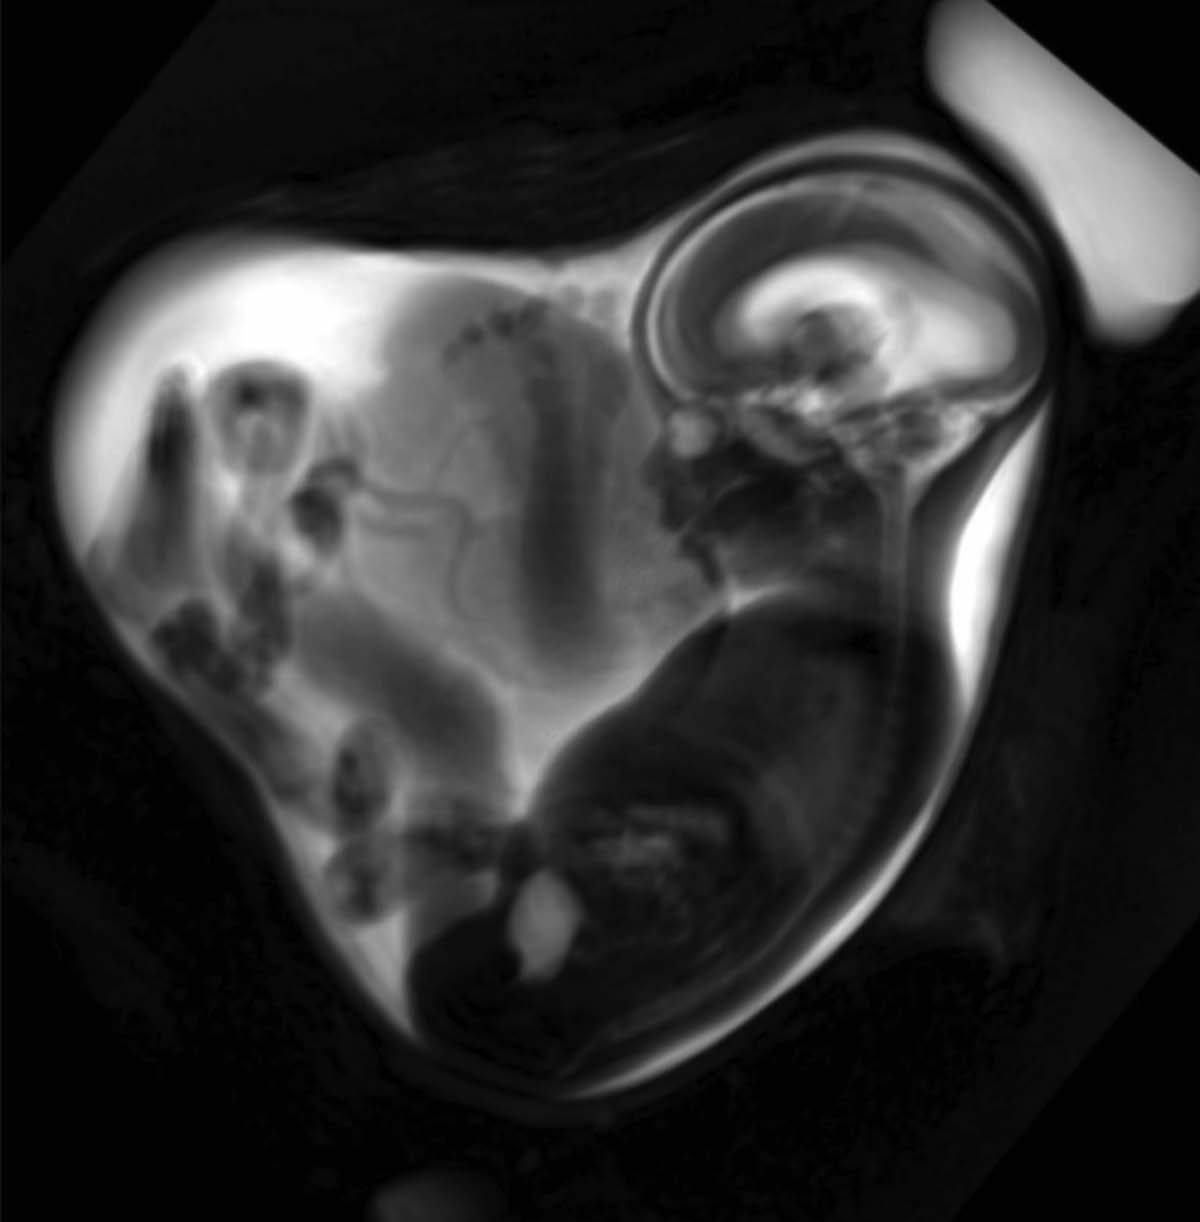 Die fetale MRT kann etwa ab der 18. Schwangerschaftswoche eingesetzt werden (©LMU Klinikum München)